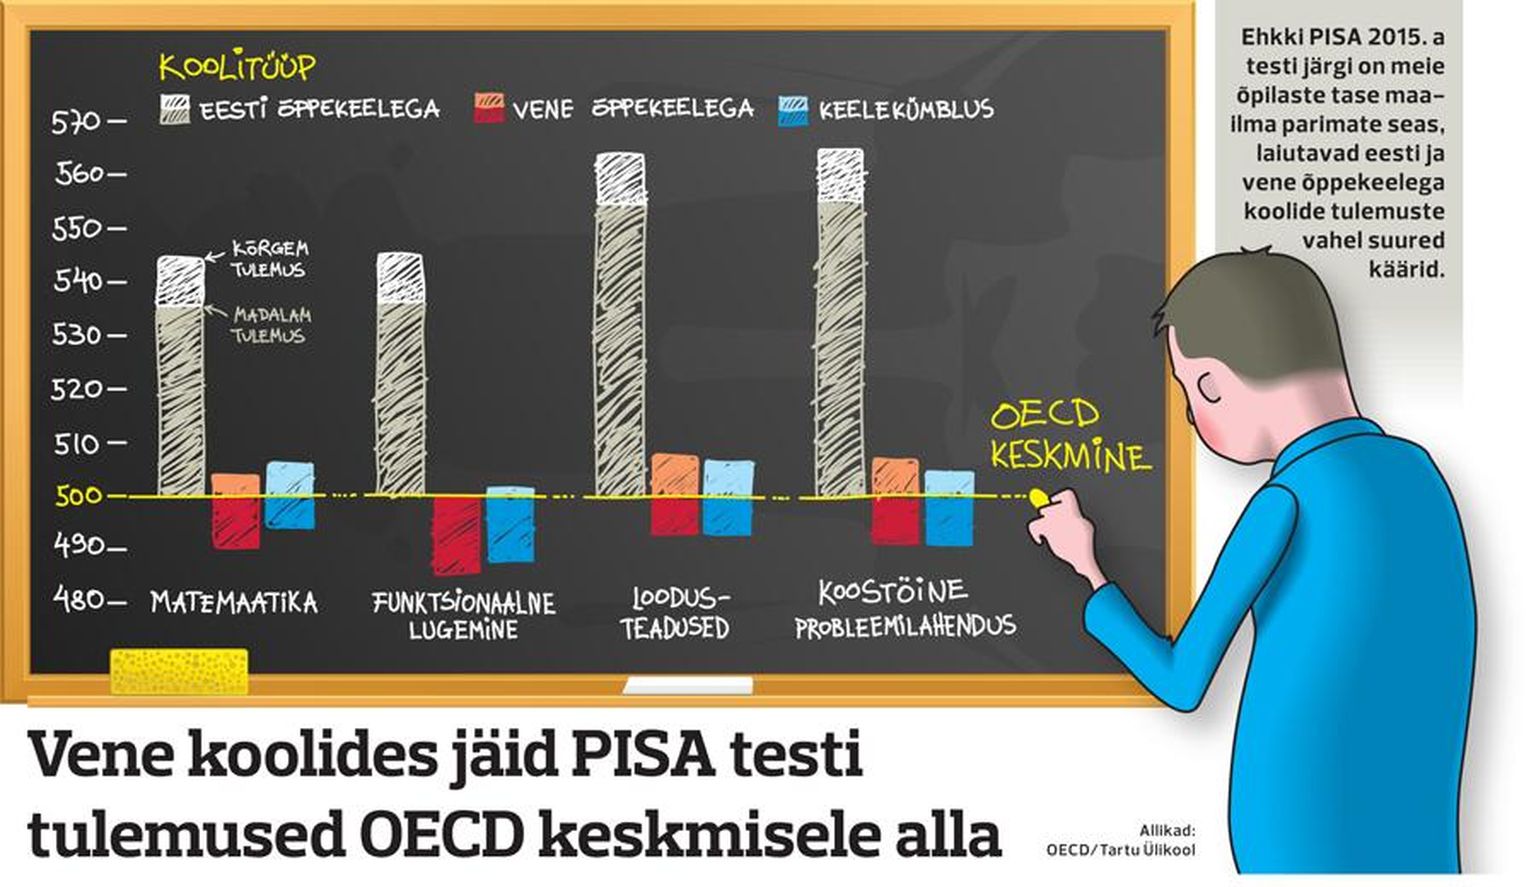 Результаты теста PISA в эстонских и русских школах.